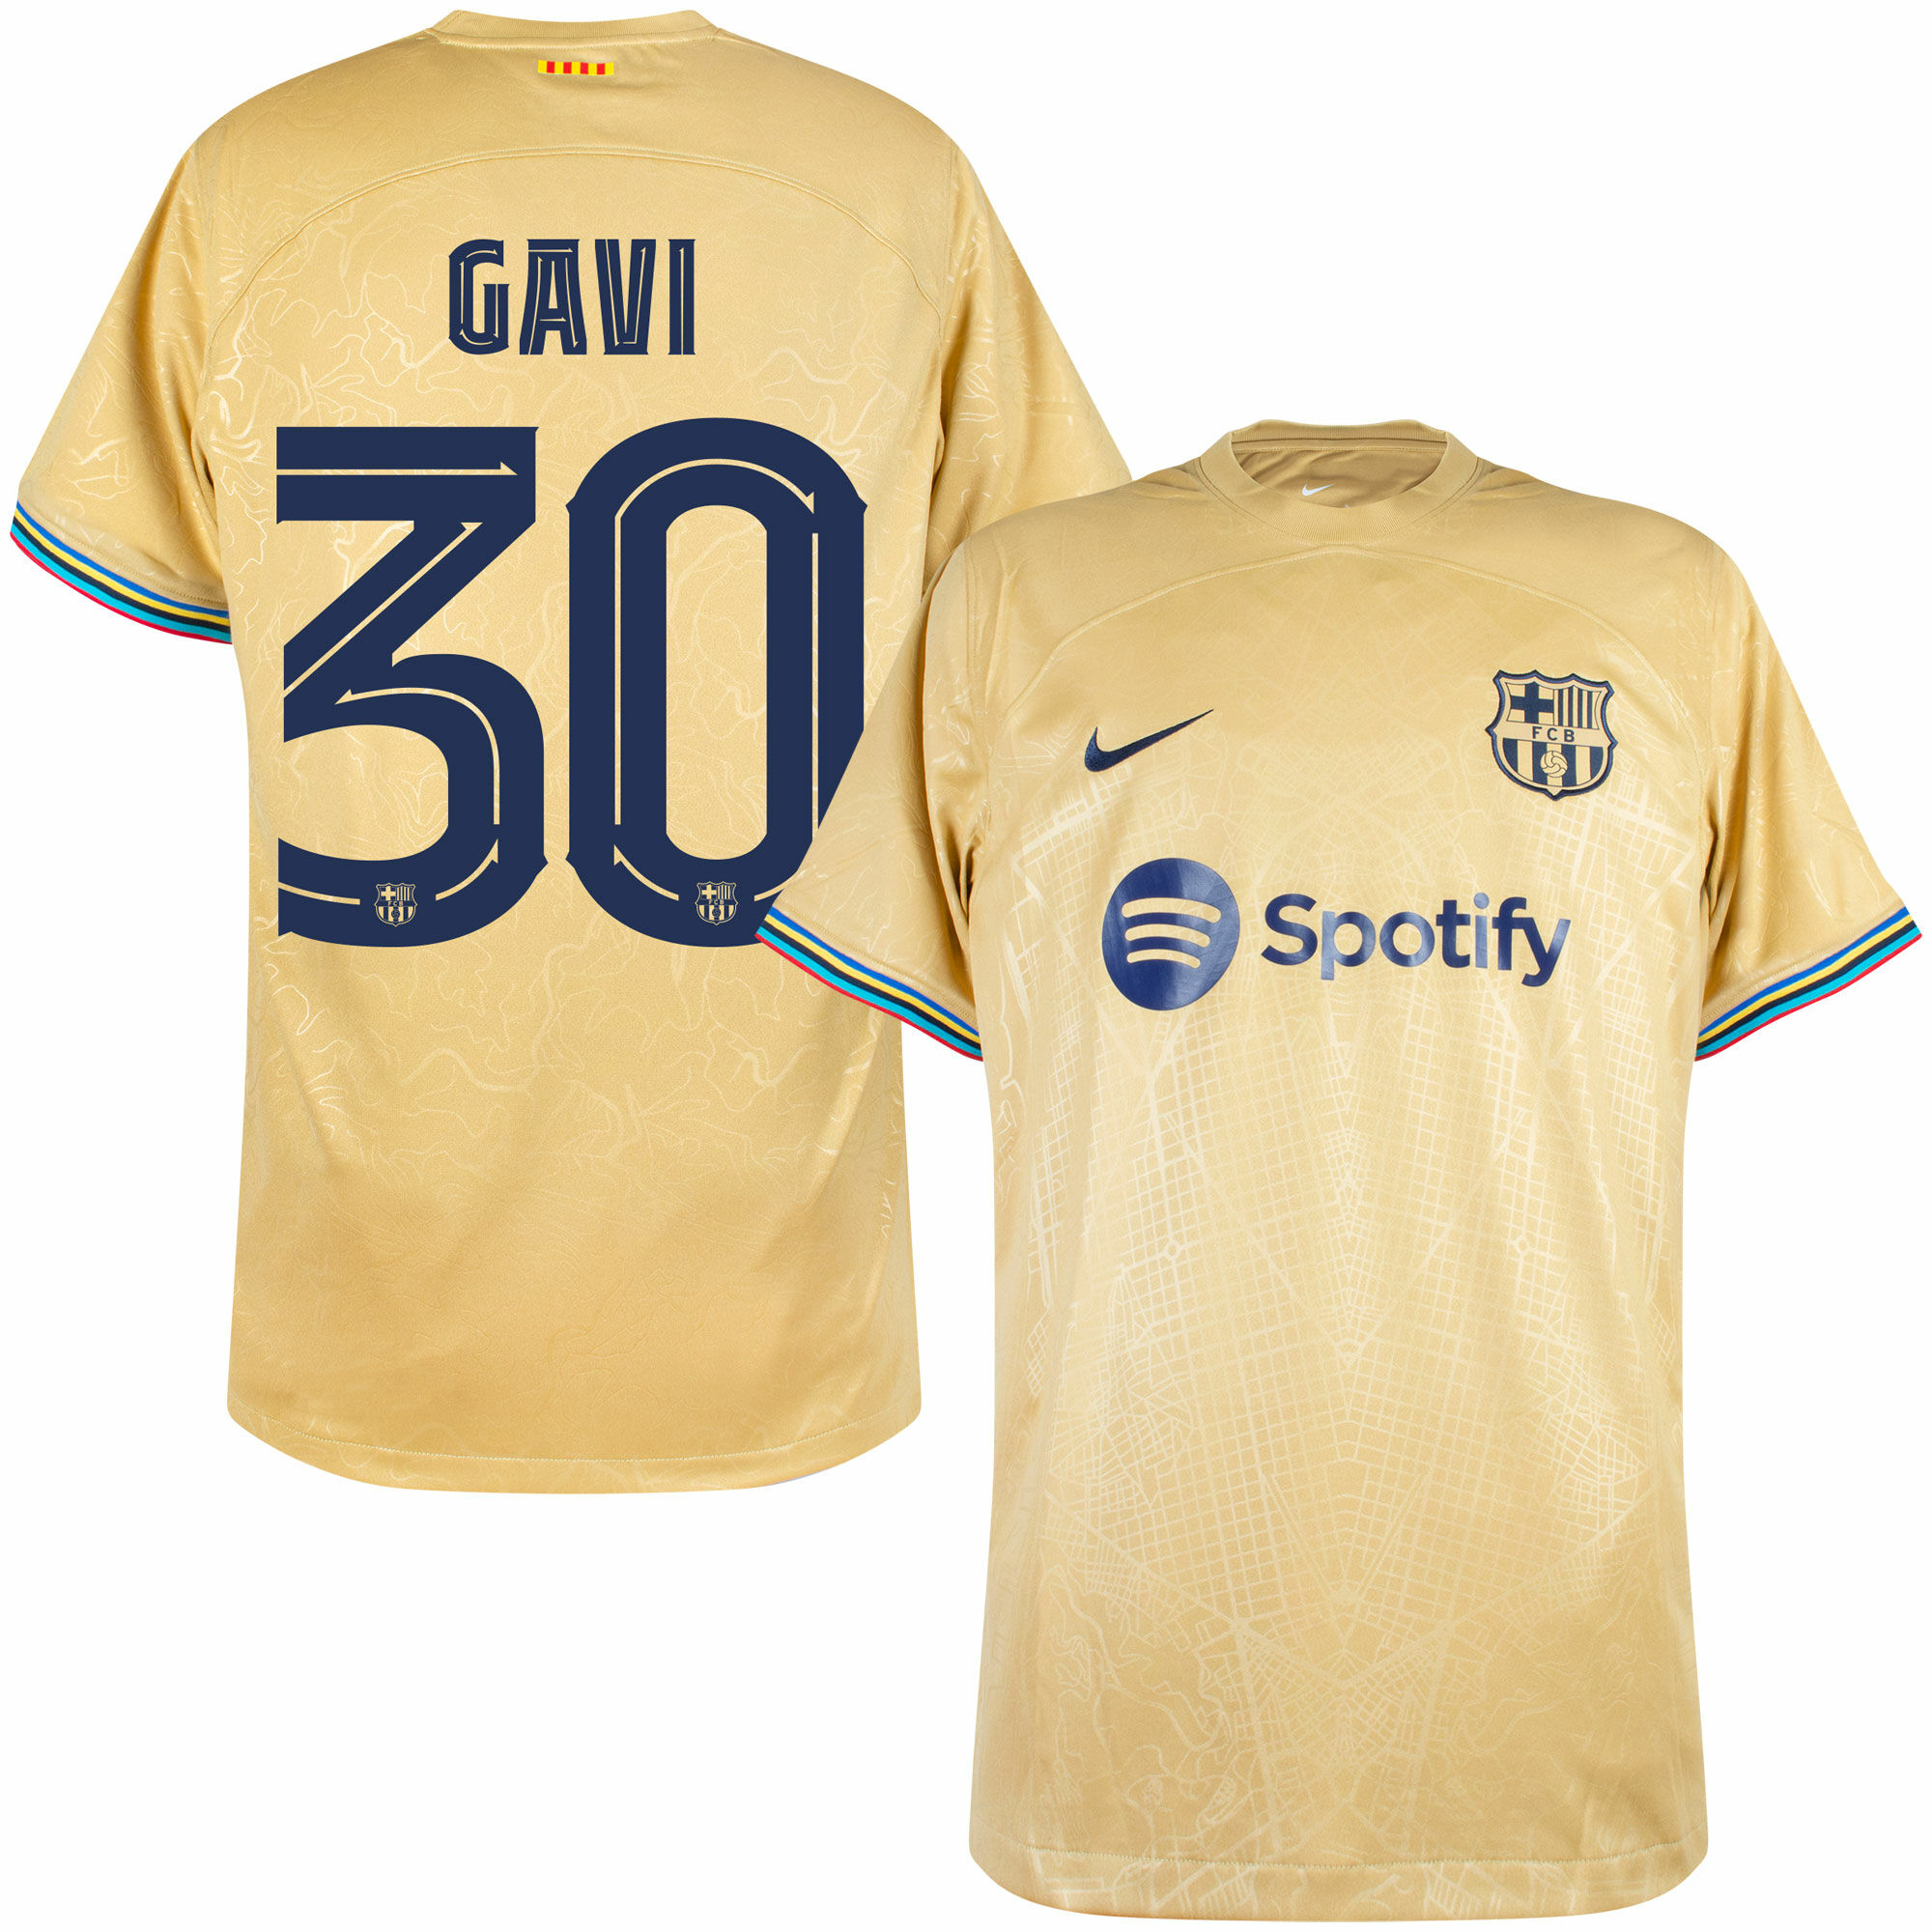 Barcelona - Dres fotbalový - číslo 30, oficiální potisk, žlutý, Gavi, sezóna 2022/23, venkovní